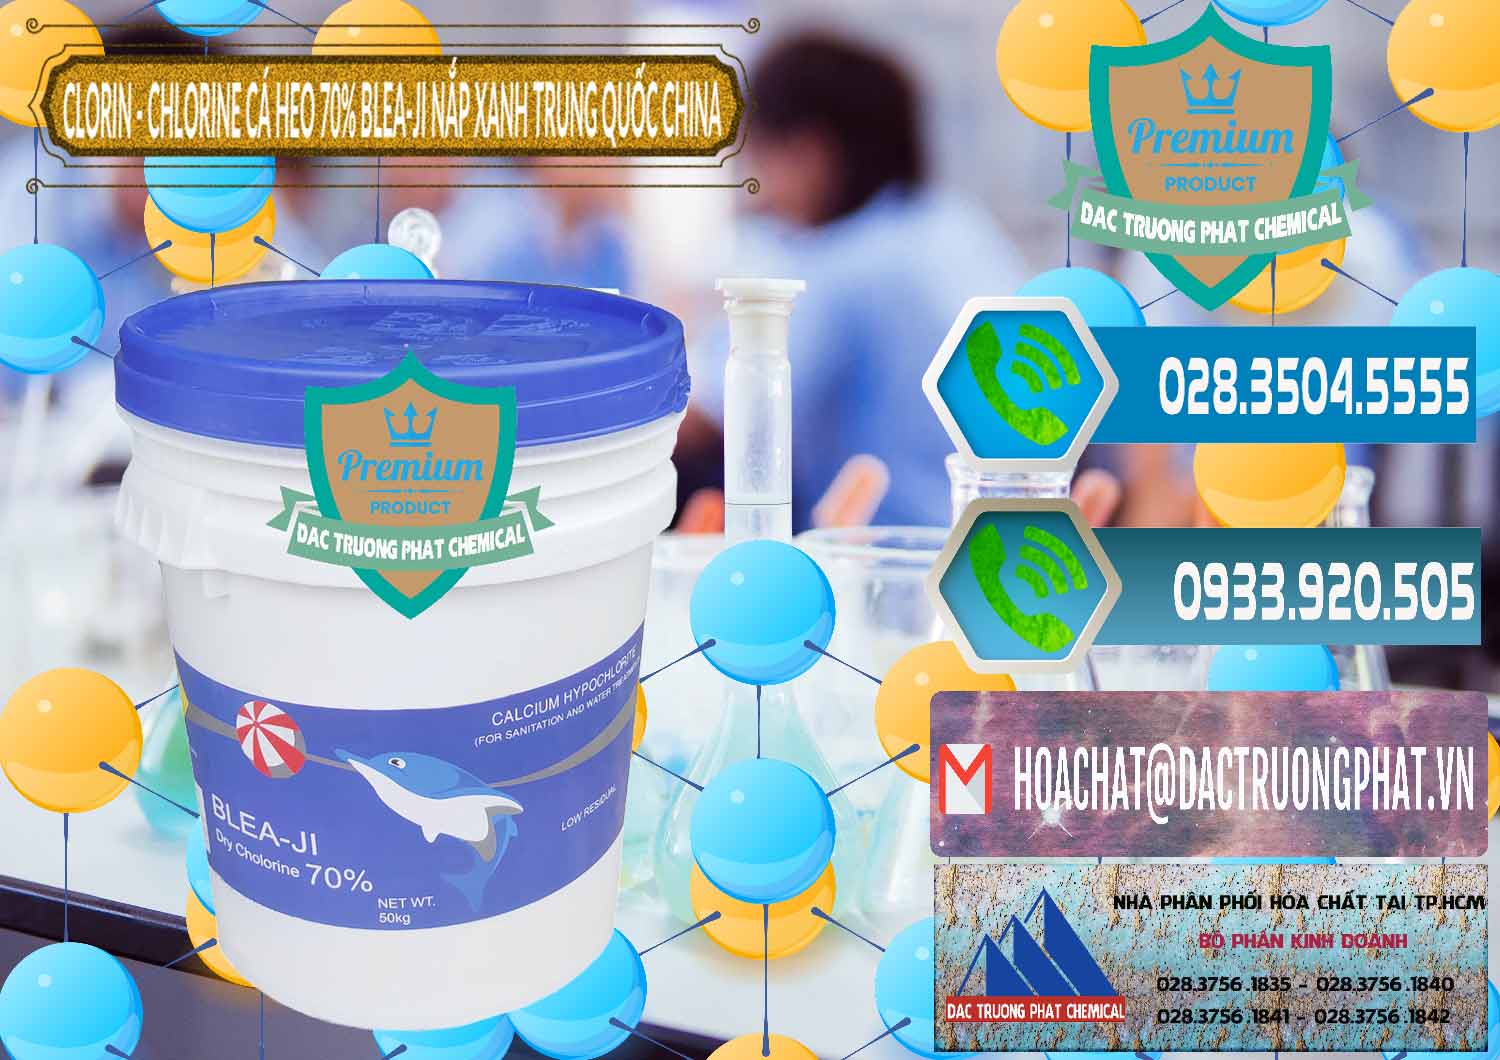 Công ty chuyên cung cấp & bán Clorin - Chlorine Cá Heo 70% Cá Heo Blea-Ji Thùng Tròn Nắp Xanh Trung Quốc China - 0208 - Đơn vị bán _ cung cấp hóa chất tại TP.HCM - congtyhoachat.net